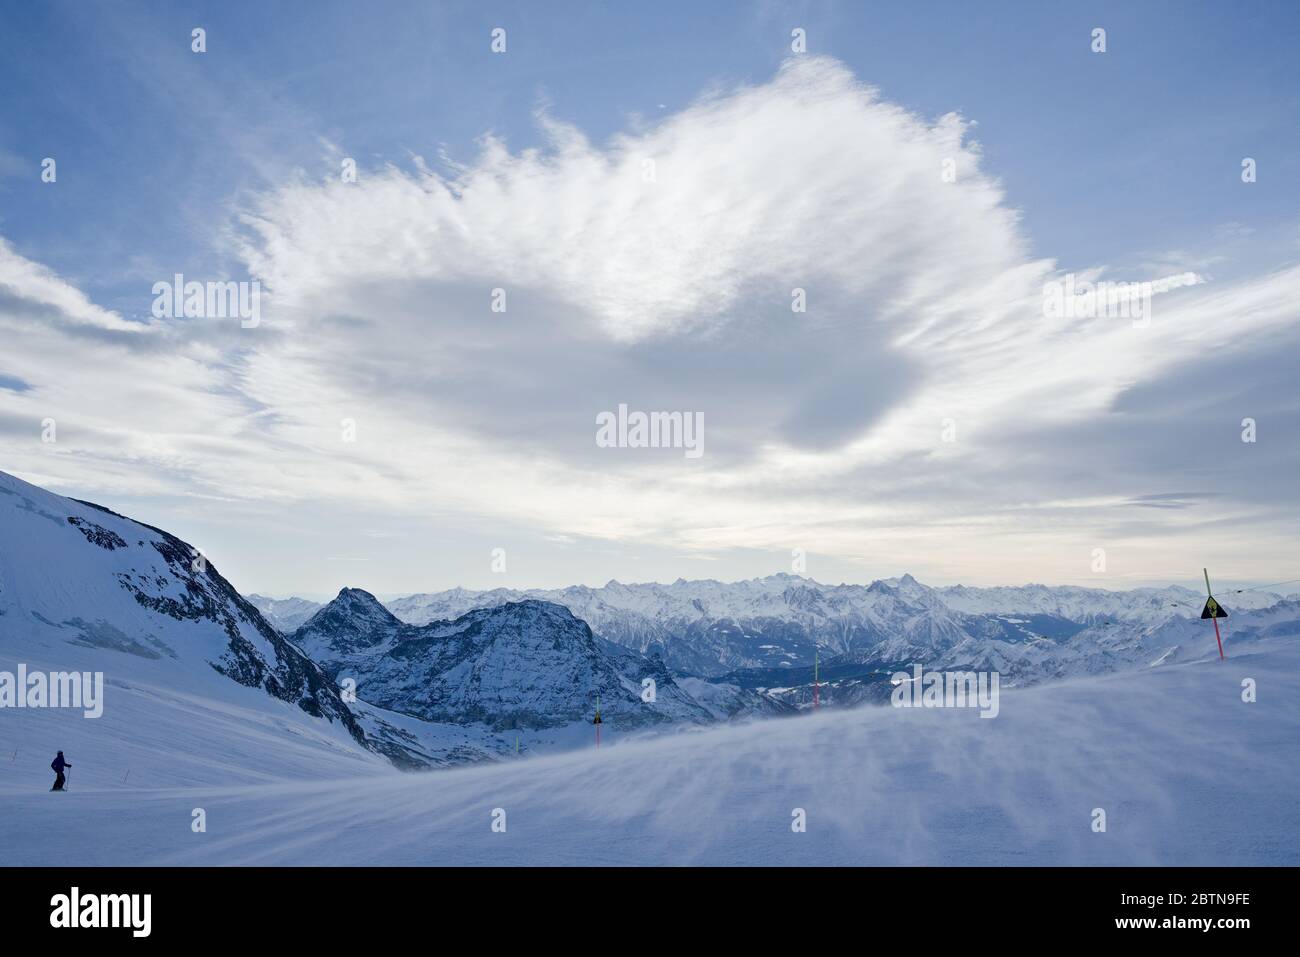 Una nuvola a forma di cuore galleggia su una pista da sci come parte di un'ampia vista sulle alpi italiane Foto Stock